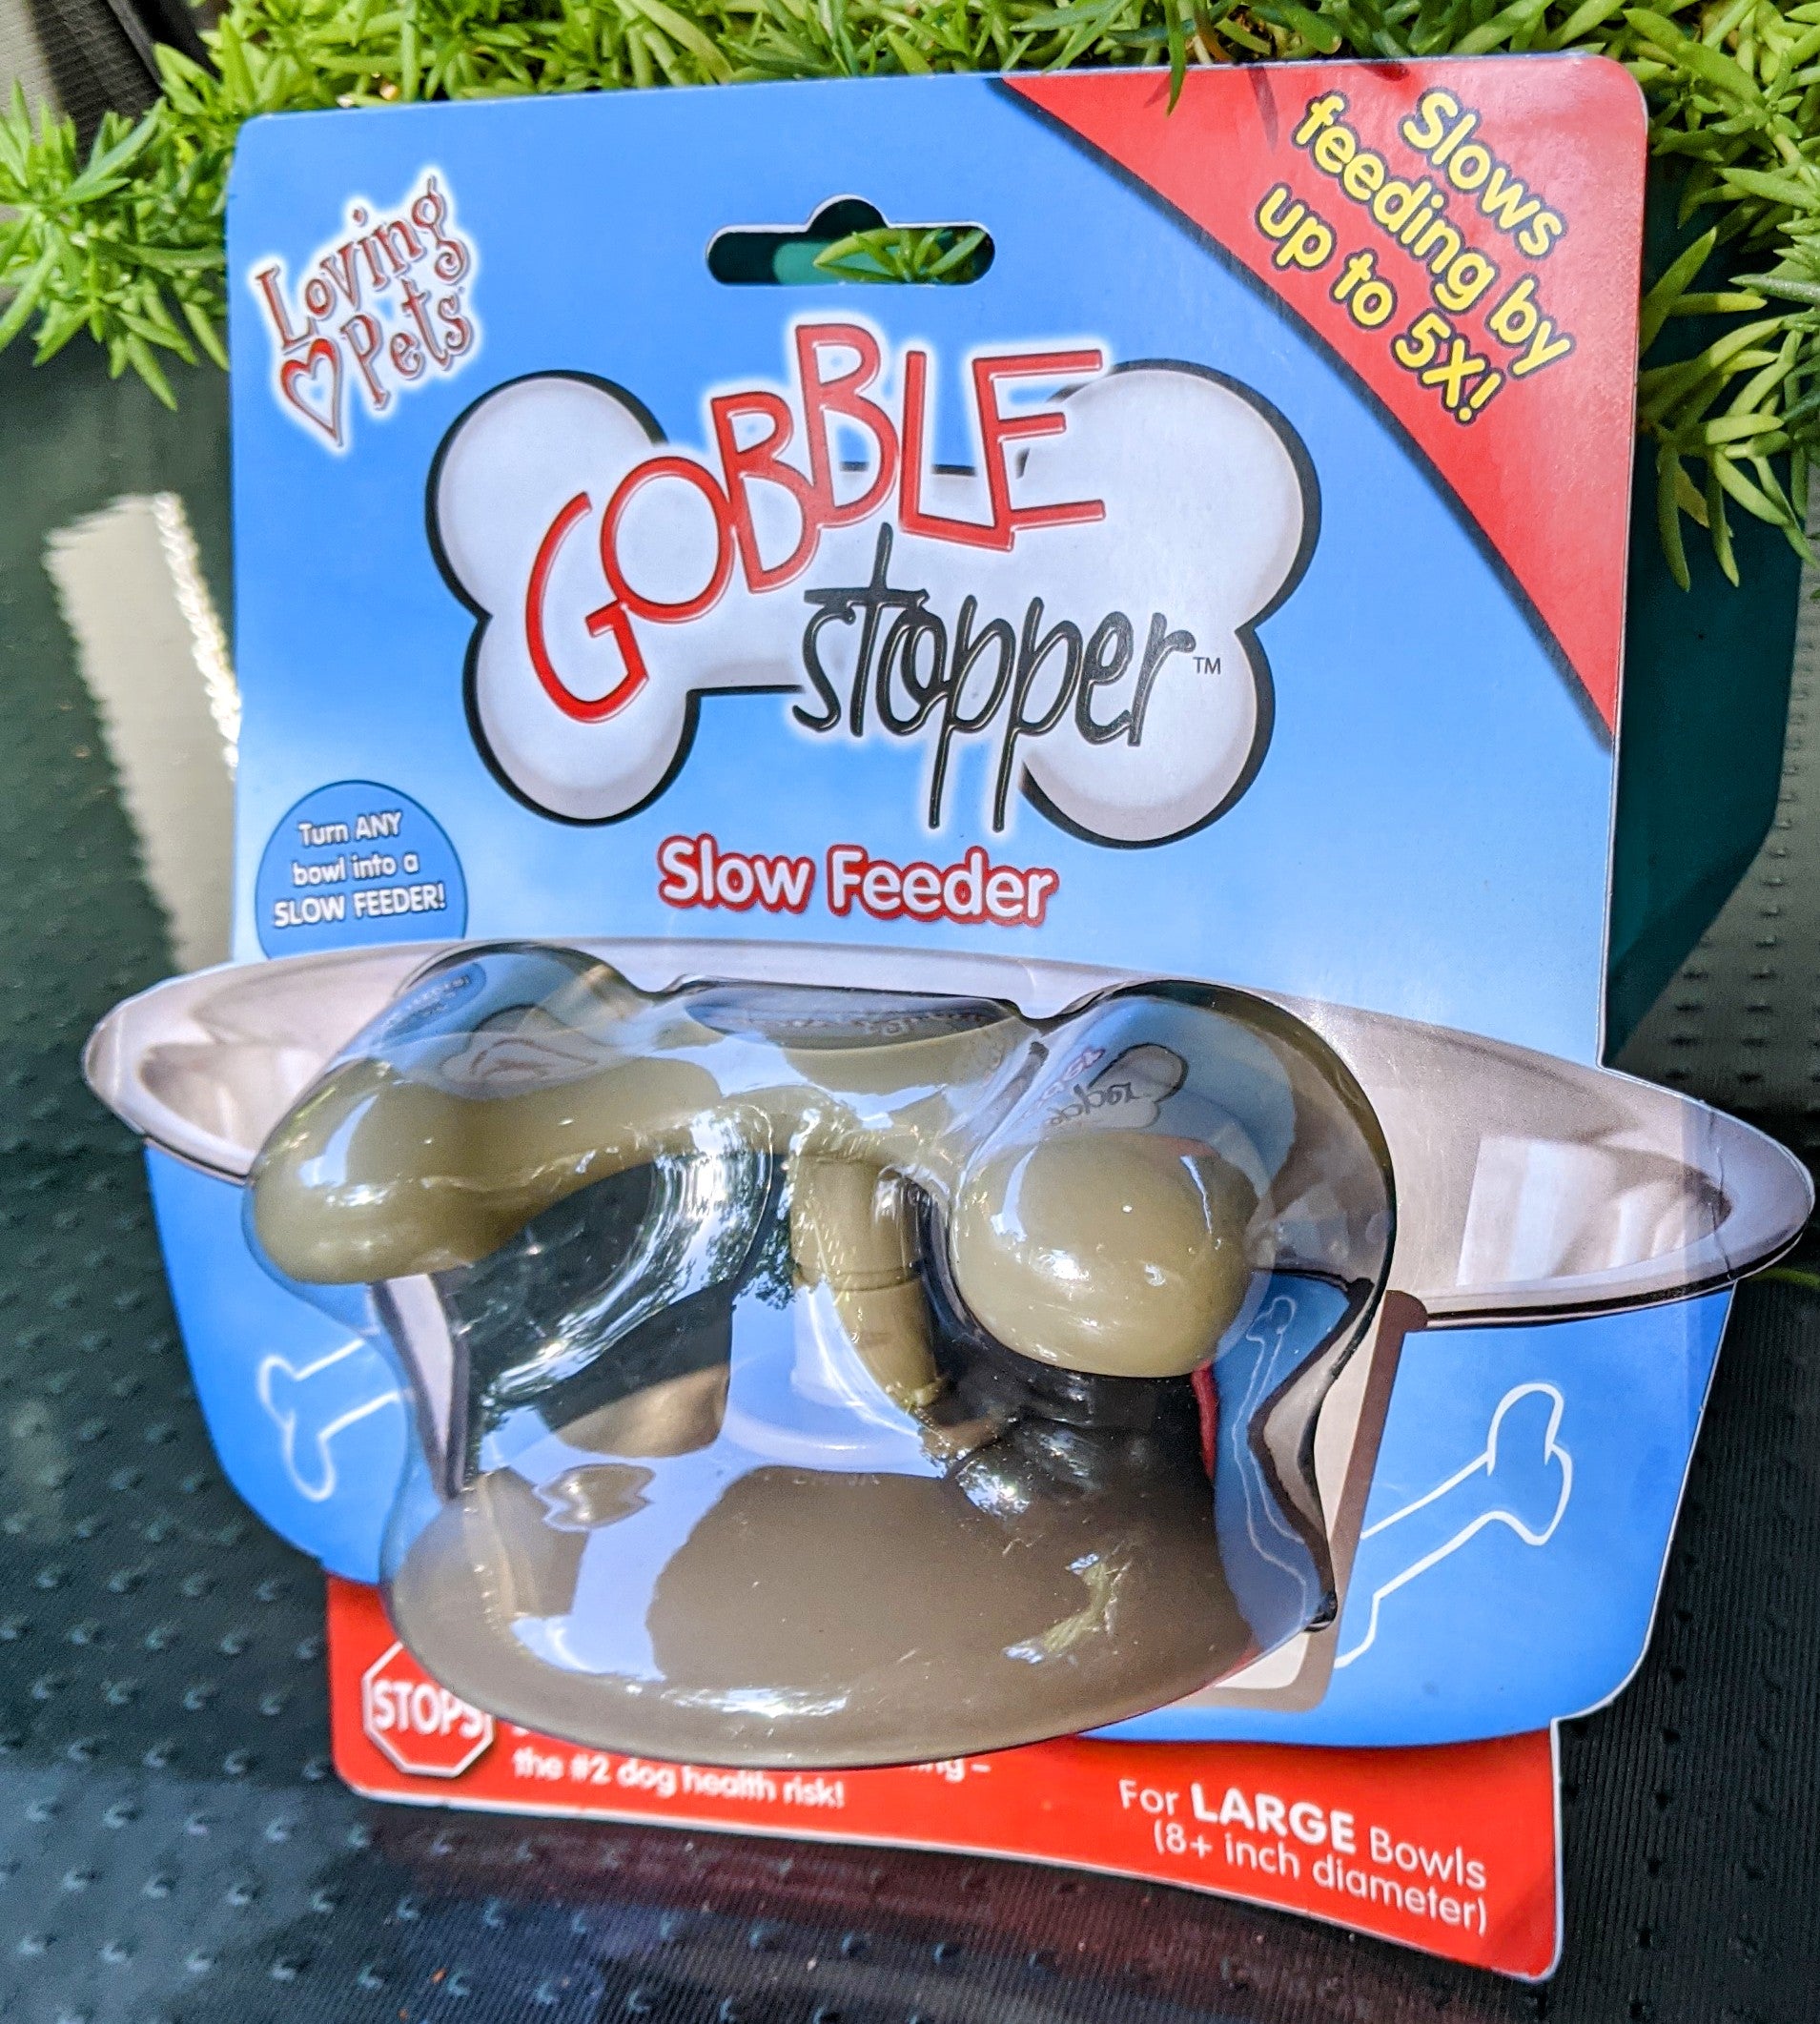 Loving Pets - Gobble Stopper (Slow Feeder) Large